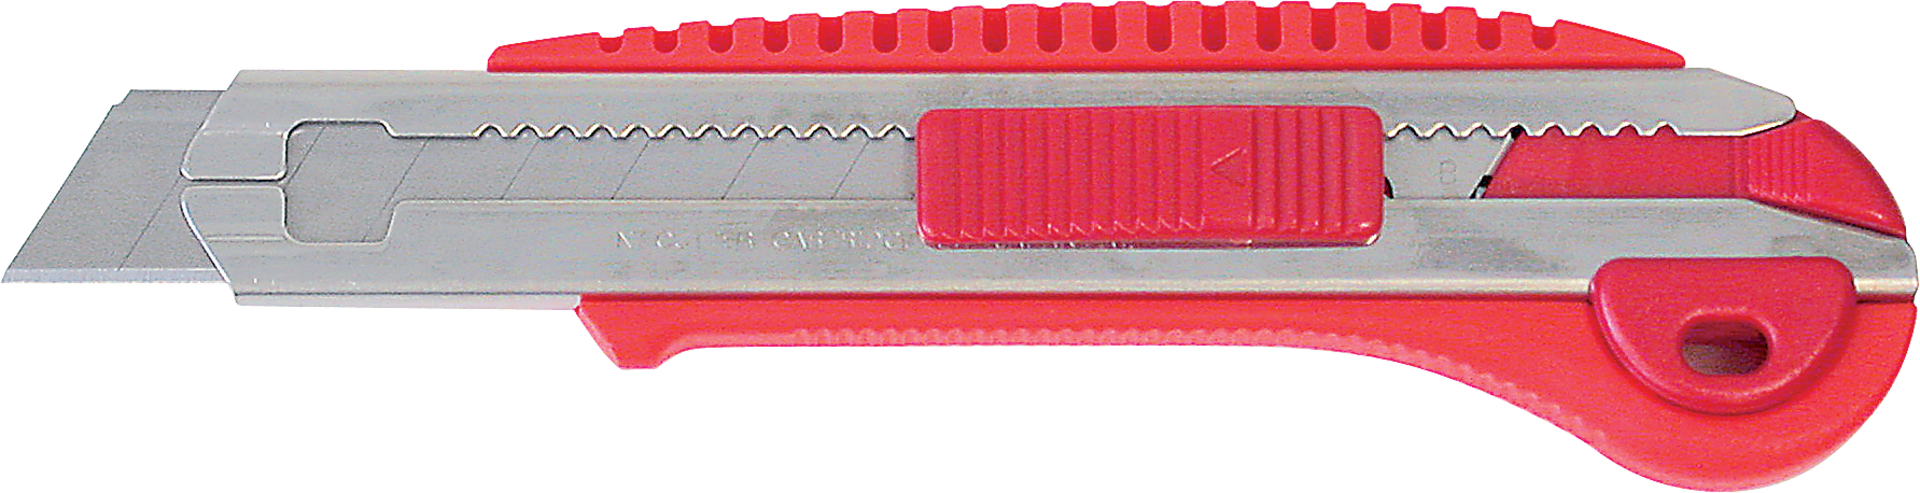 FORMAT Cuttermesser 18 mm, mit Drucktaste